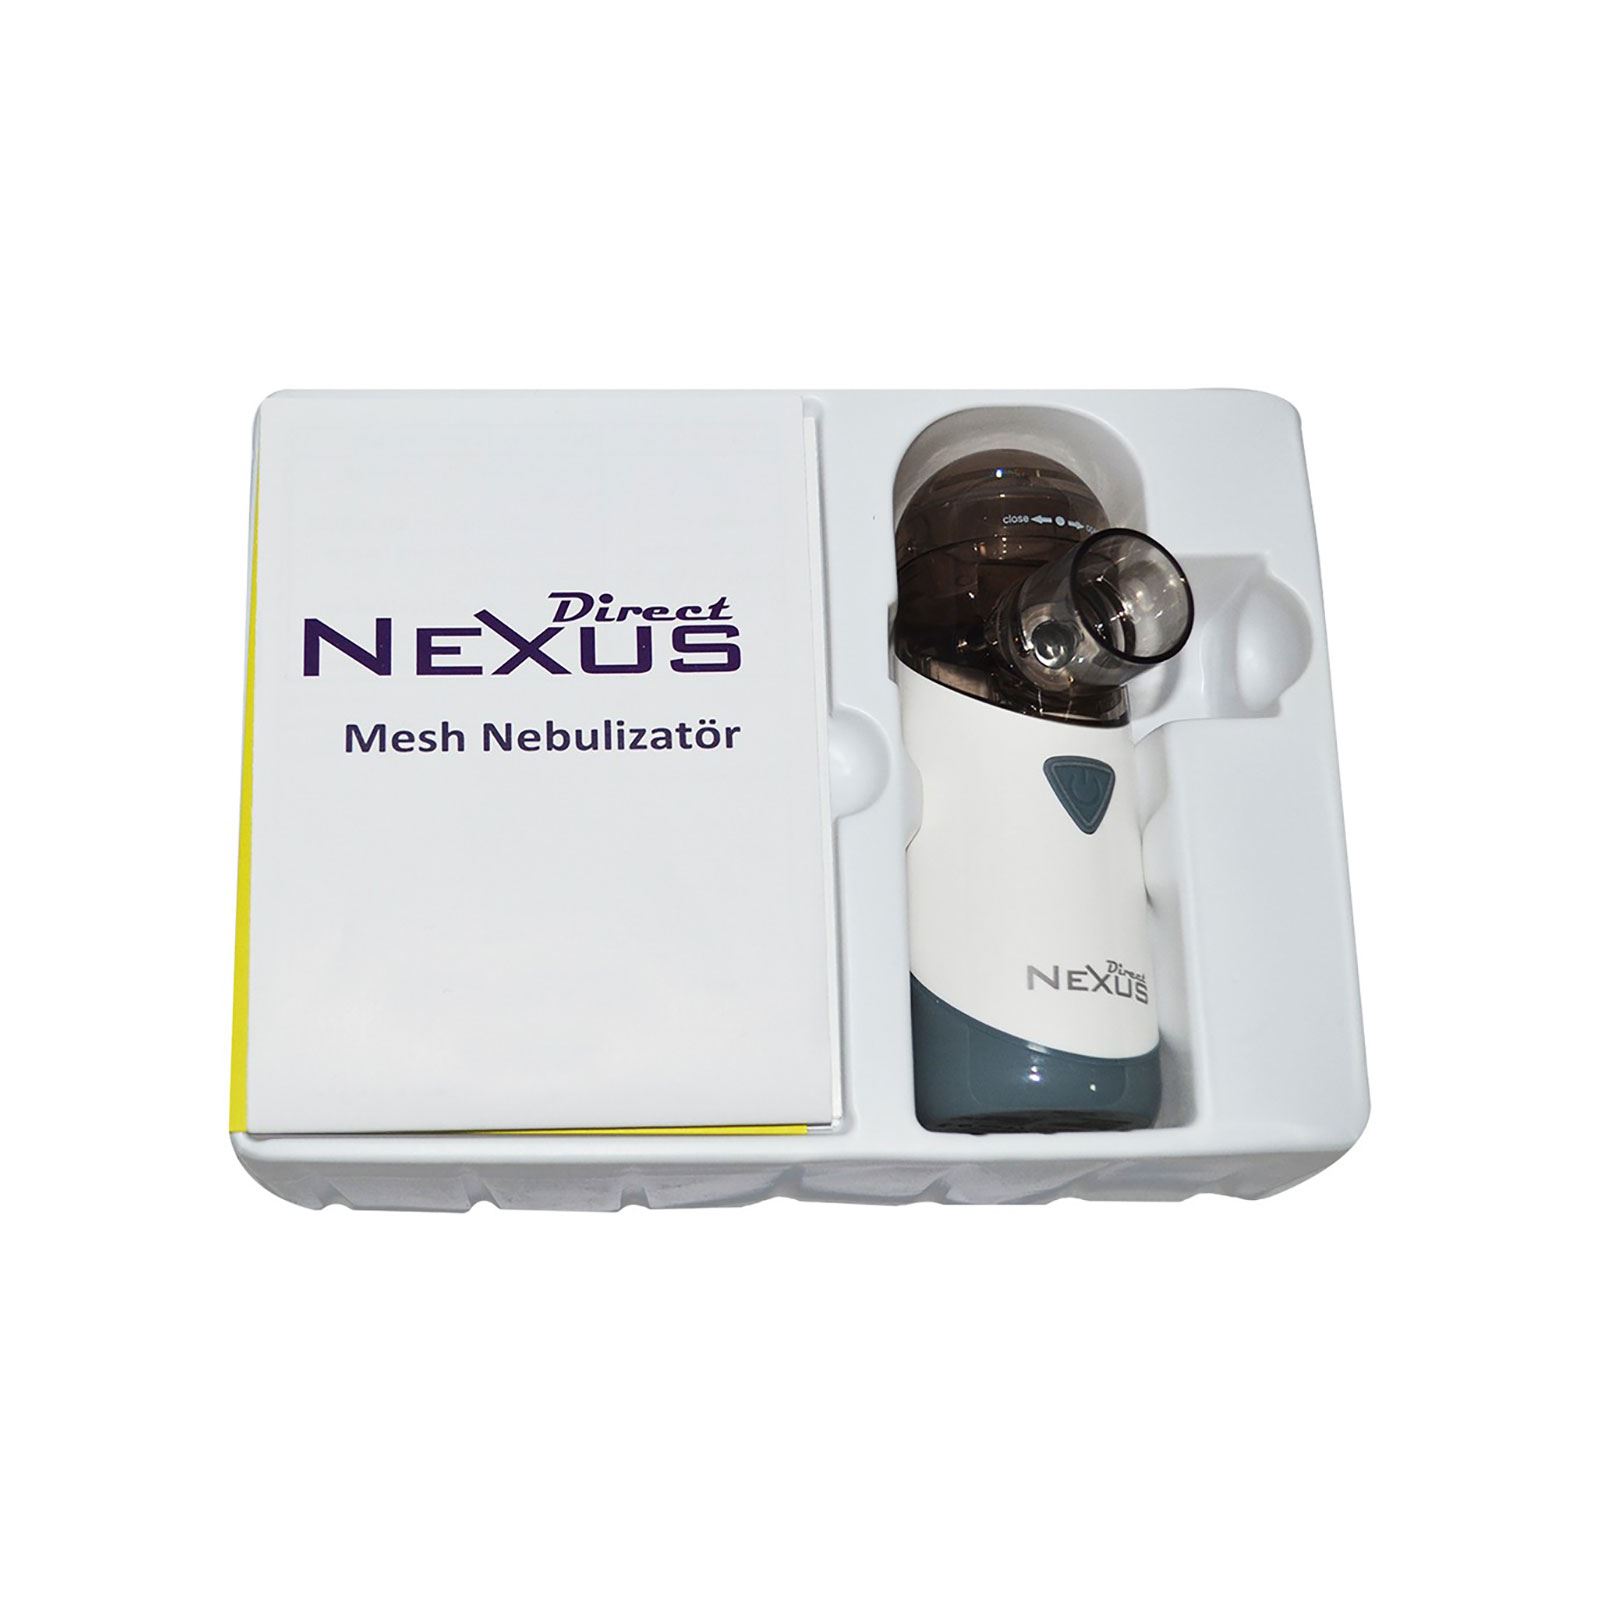 Direct Nexus Taşınabilir Mini Mesh Nebulizatör